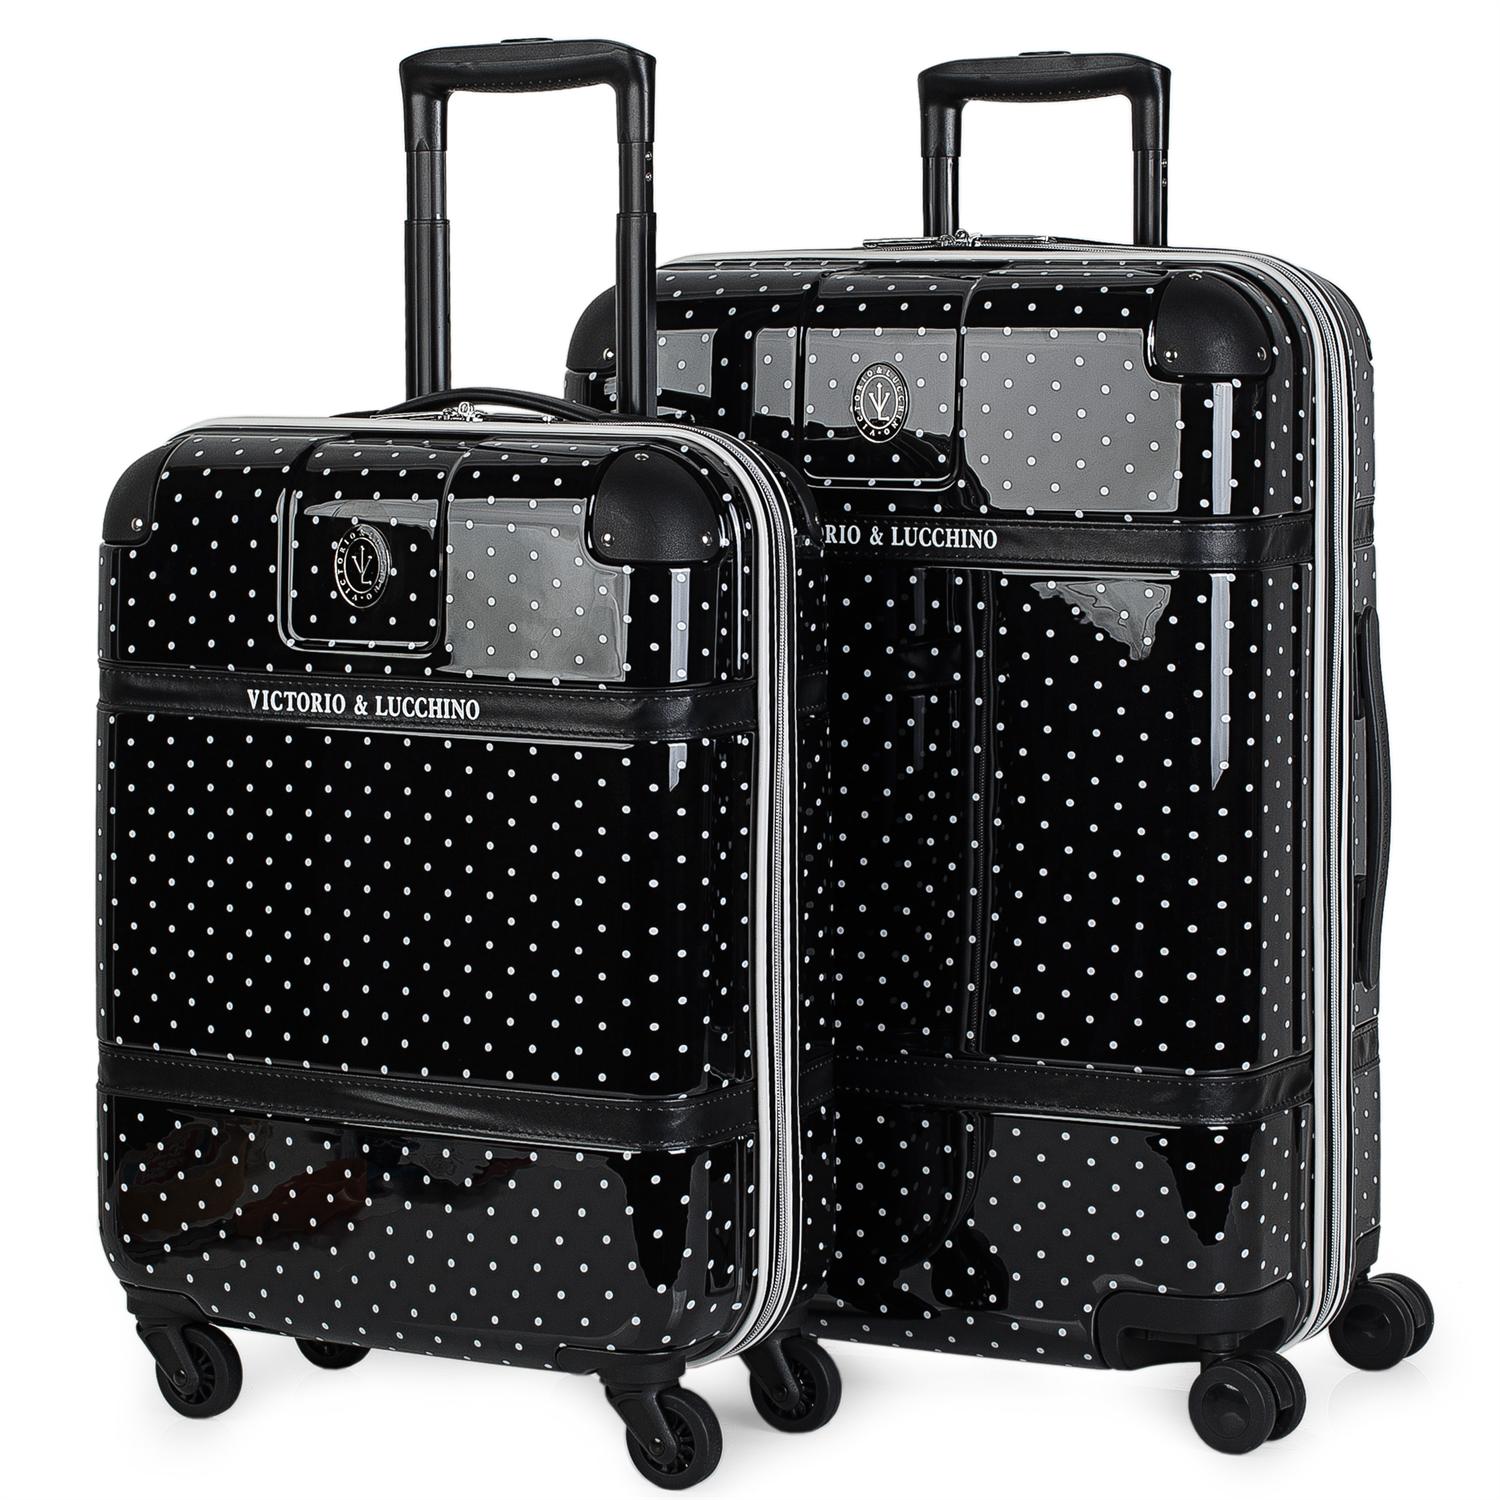 Maleta Victorio y Lucchino: el equipaje ideal para tus viajes llenos de elegancia y distinción